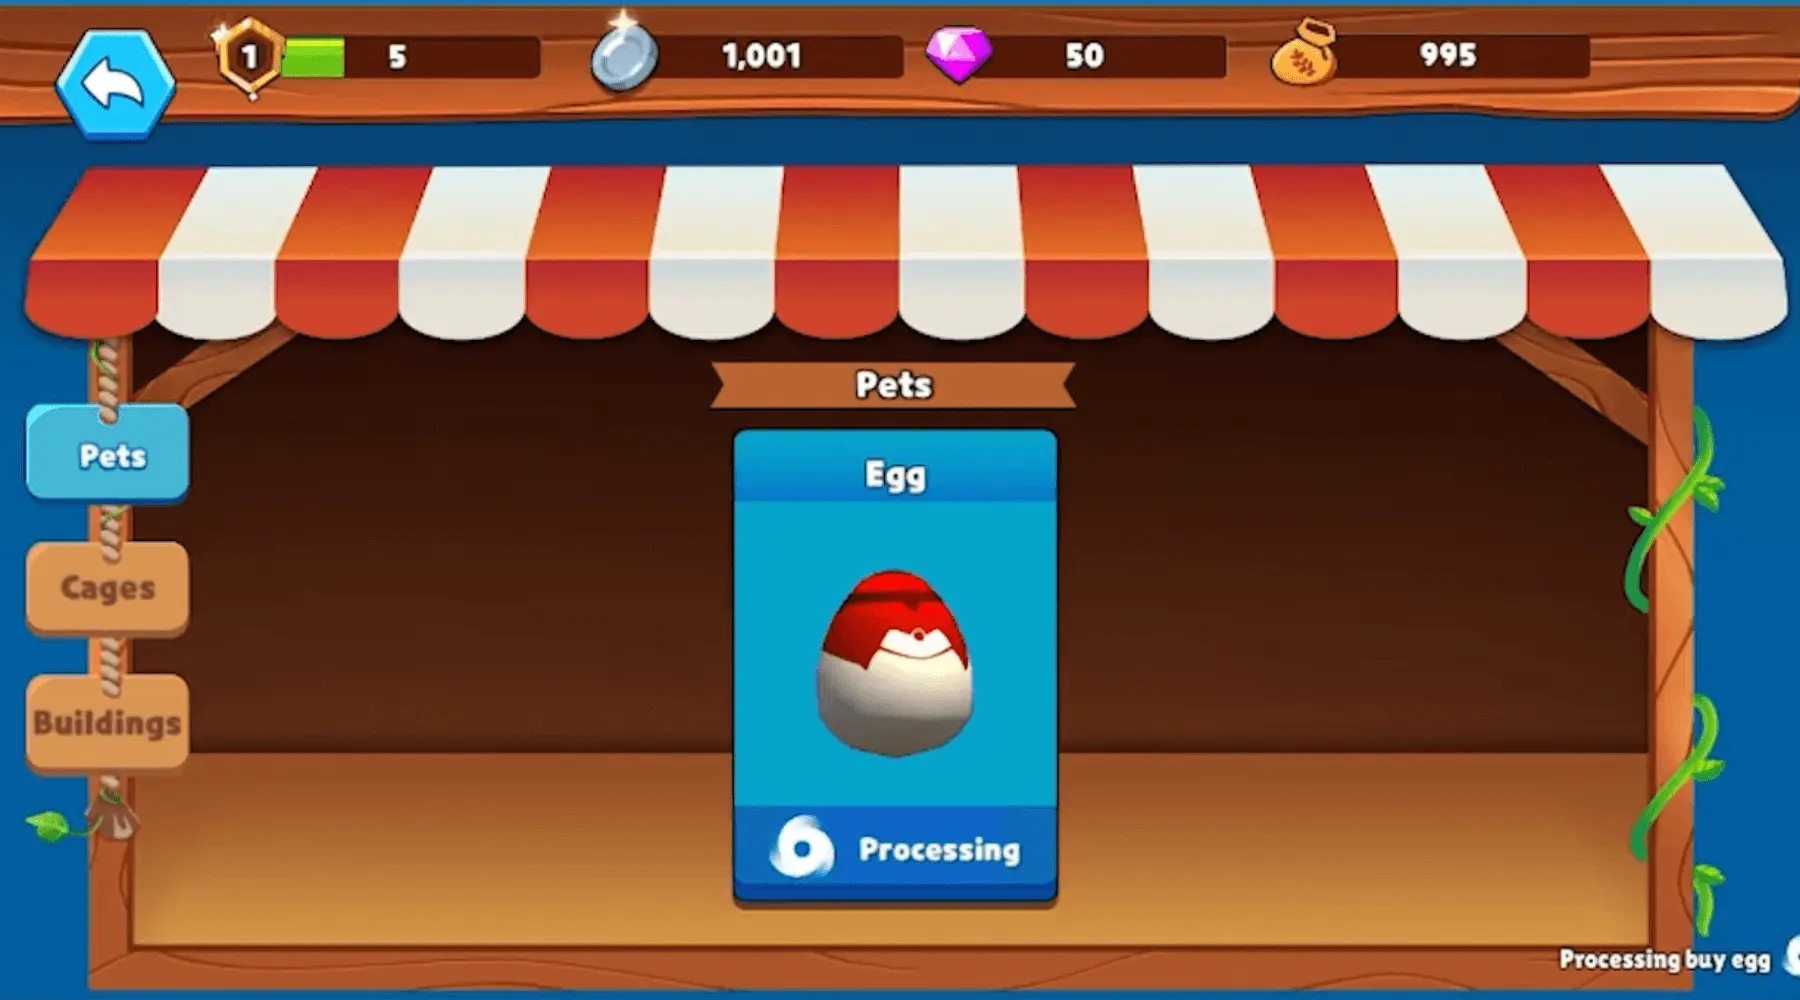 Pets egg